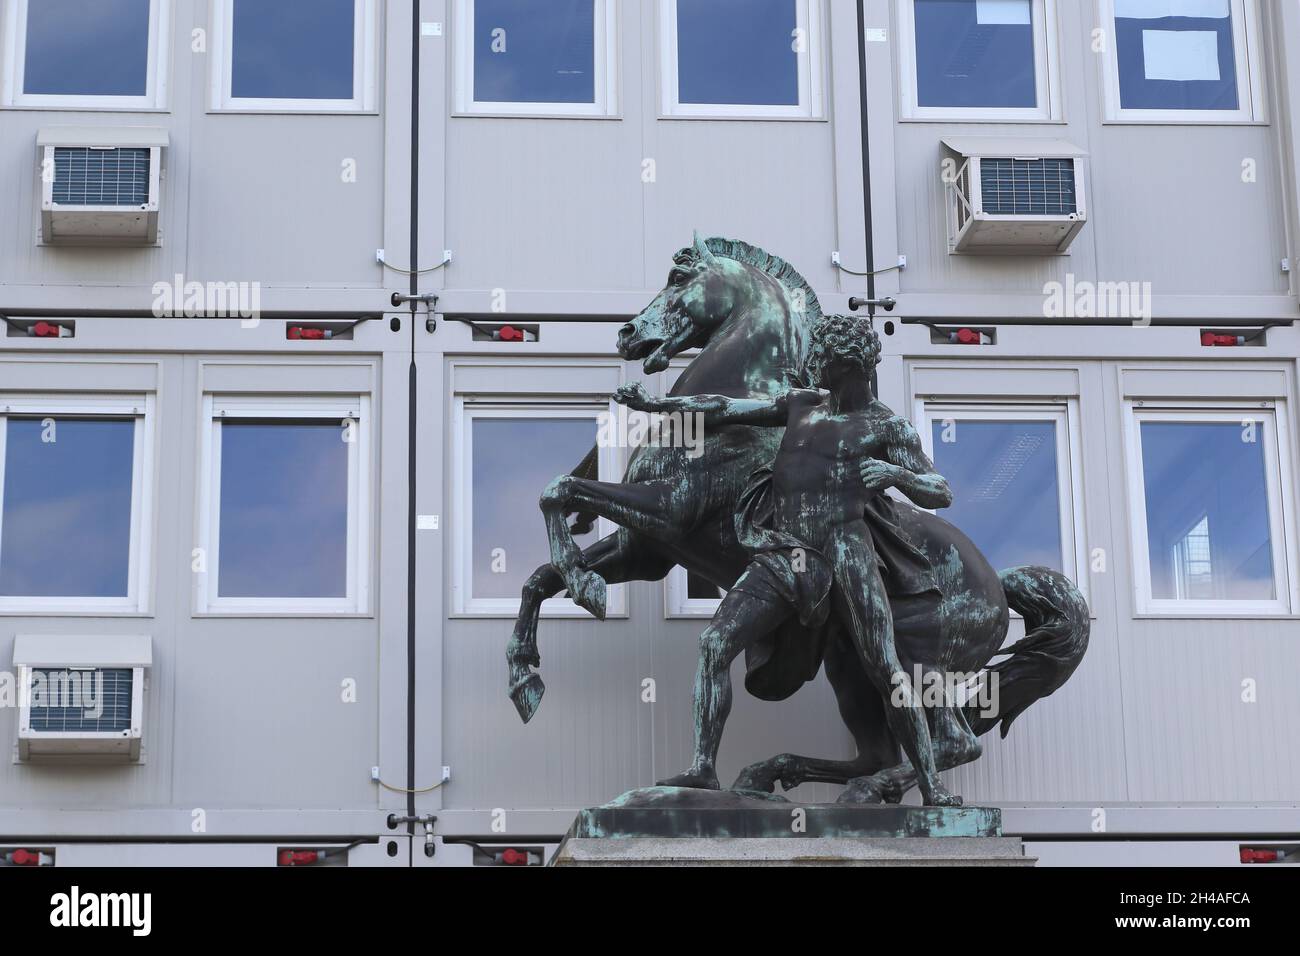 VIENNA, AUSTRIA - 16 MAGGIO 2019: Si tratta di un'antica statua di bronzo di fronte a un edificio temporaneo sul sito ricostruito del Parlamento Foto Stock